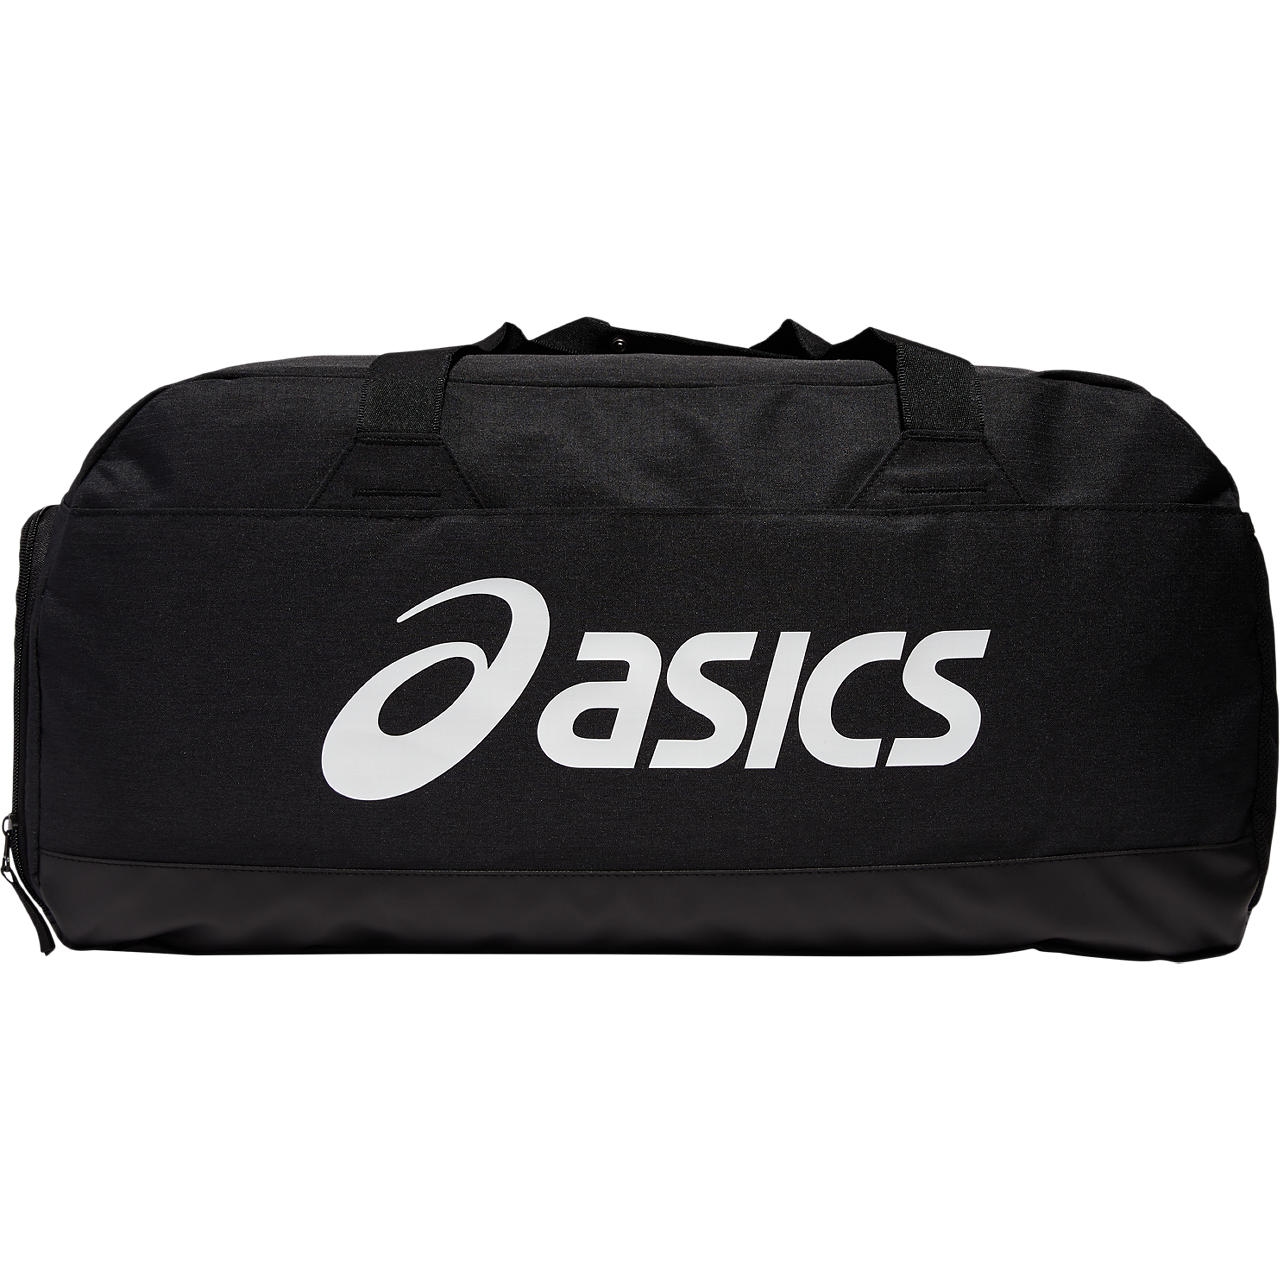 Produktbild von asics Sporttasche - Medium - performance black